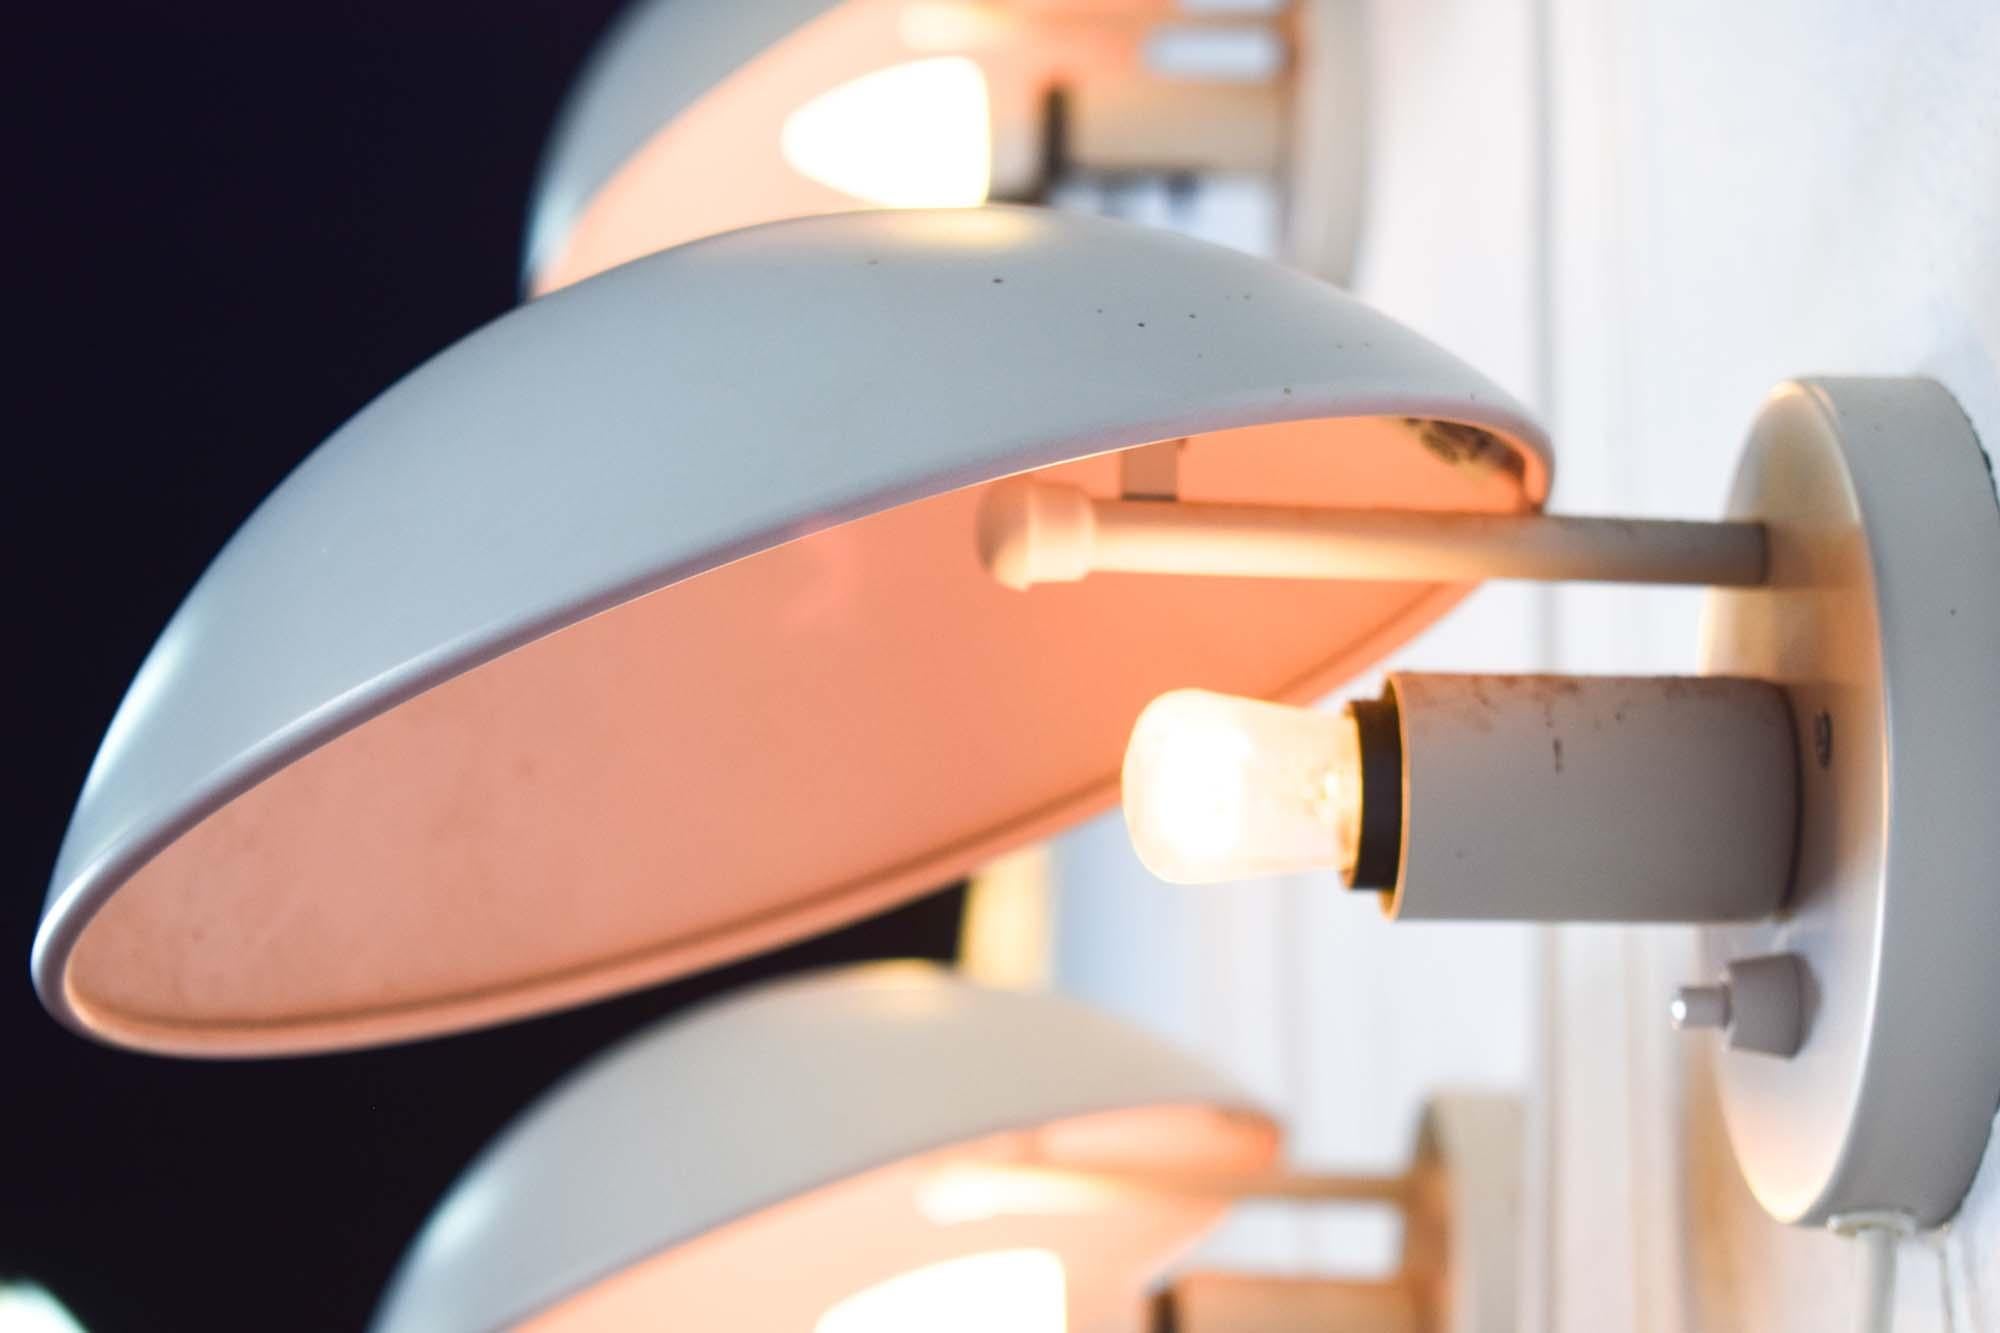 La lampada da parete PH Hat, progettata dal leggendario designer danese Poul Henningsen per Louis Poulsen, è un pezzo iconico che esemplifica un design e una funzionalità senza tempo. Creata nel 1958, questa lampada testimonia l'approccio innovativo